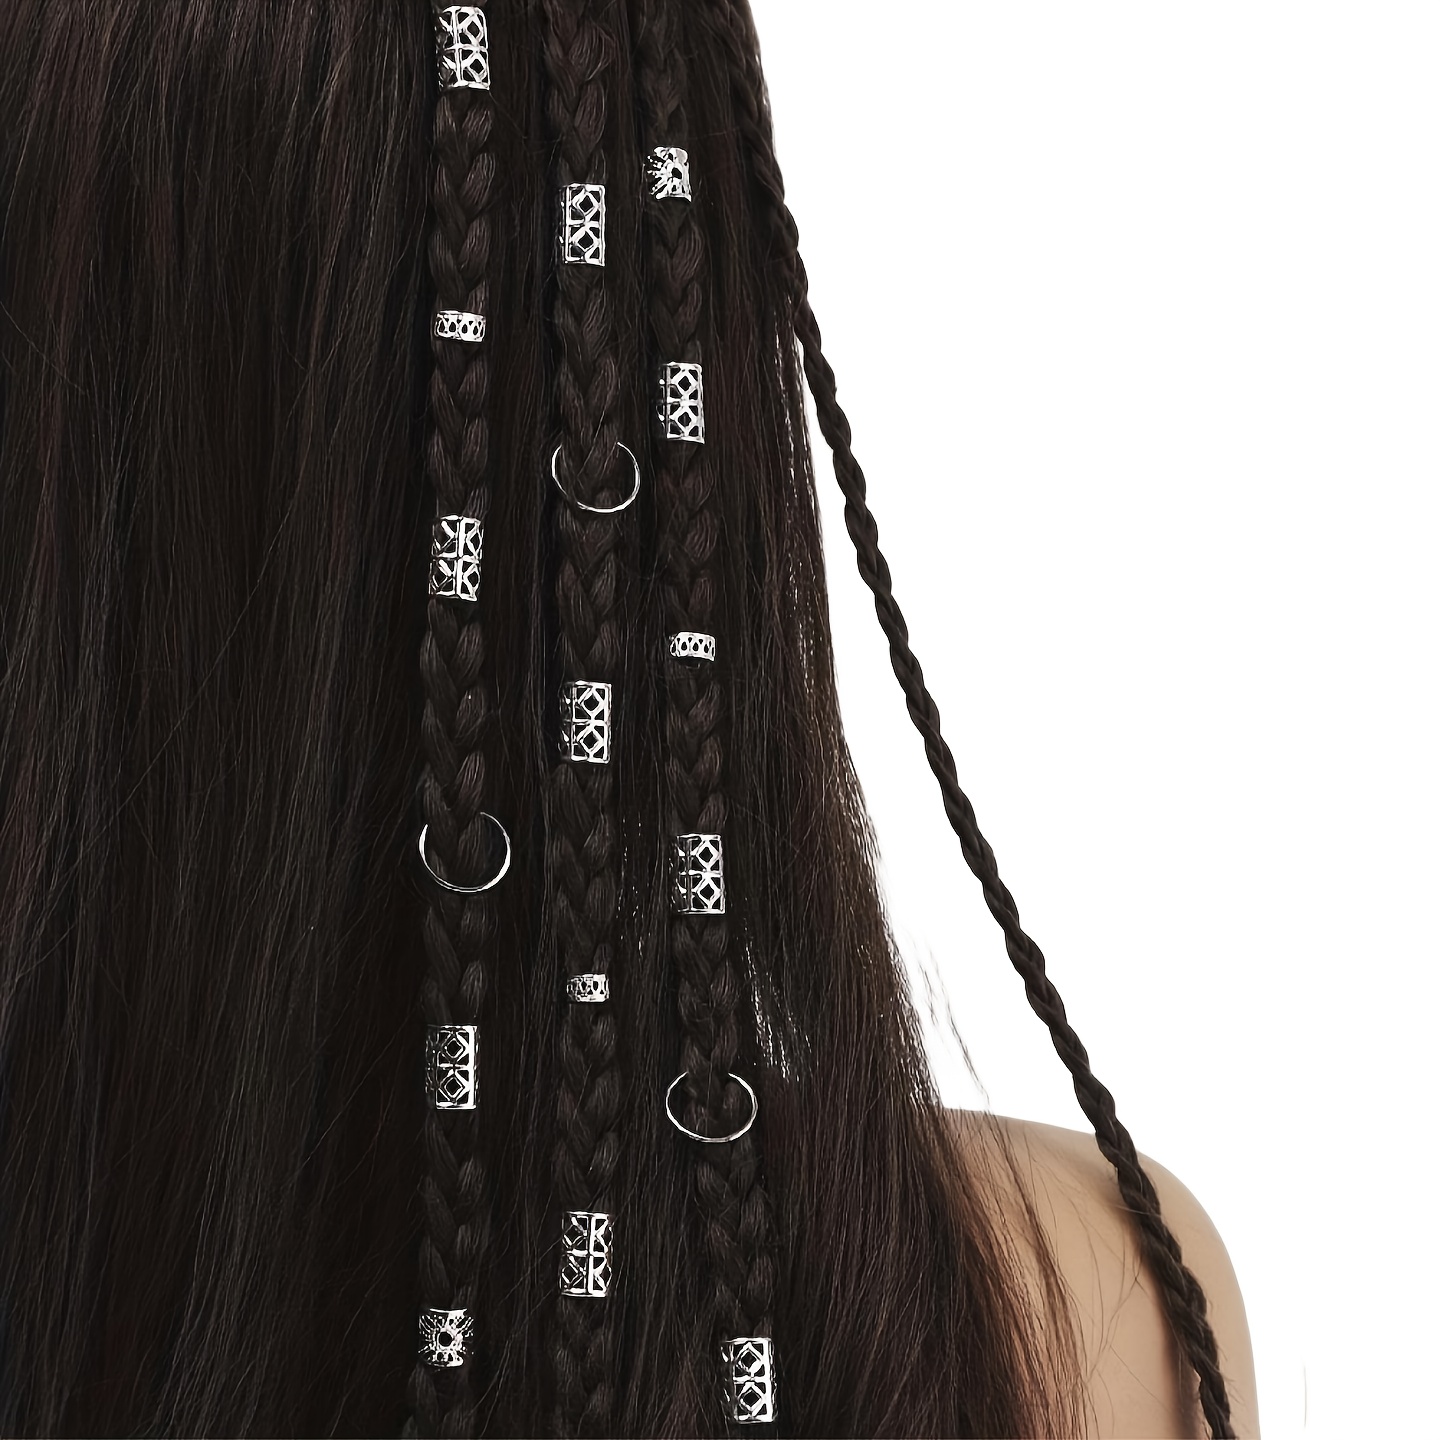 

80pcs Hollow Hair Braids Rings, Retro Dreadlock Hair Accessories For Girls